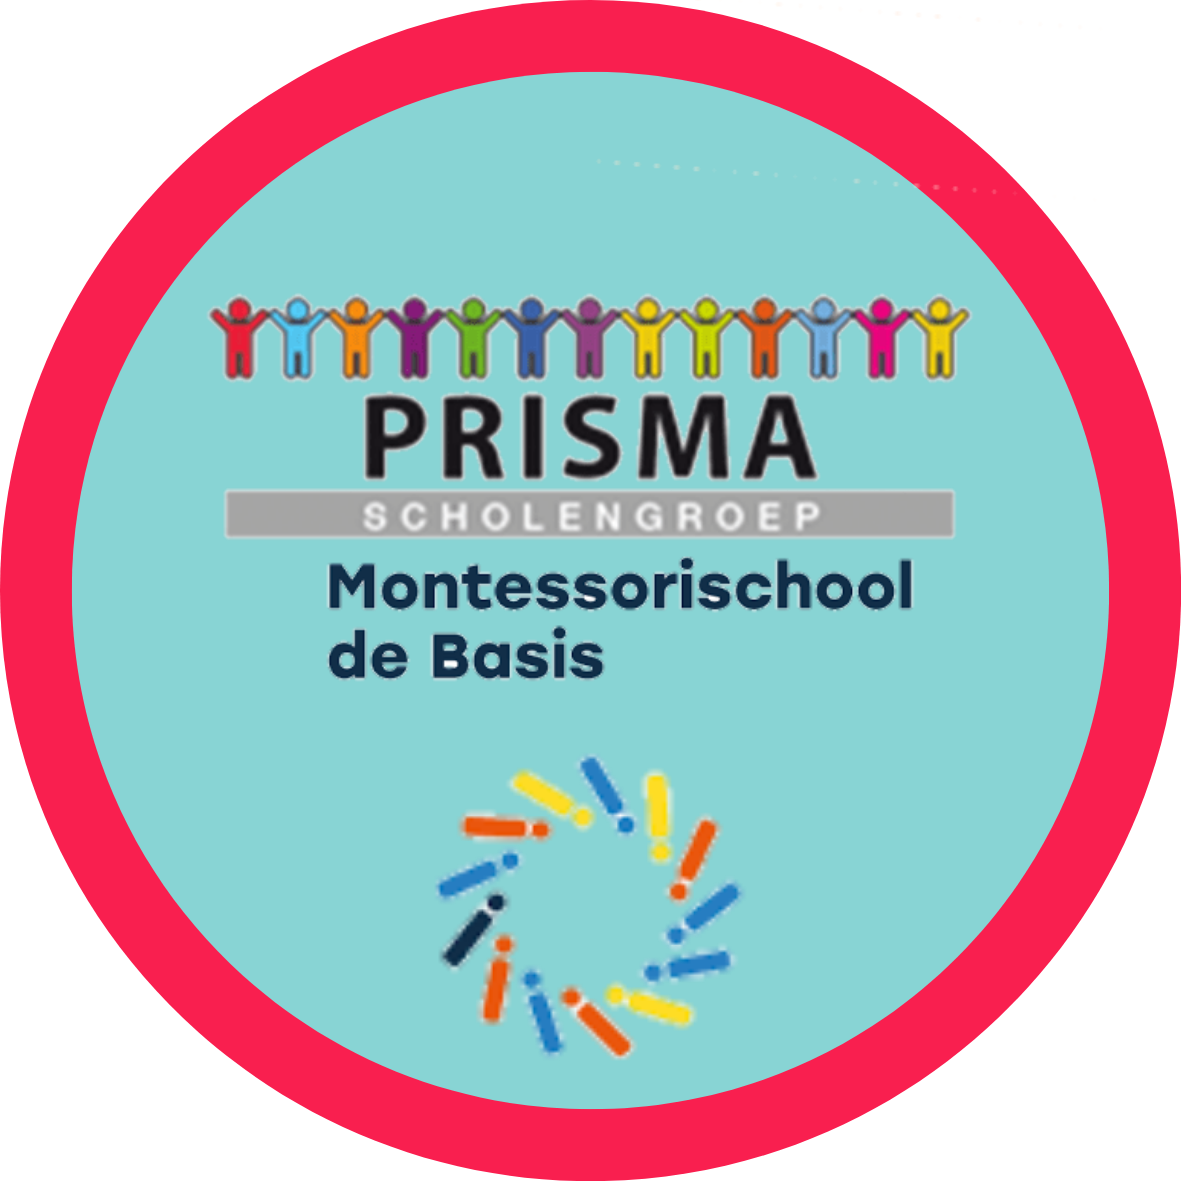 Prisma scholengroep: Montessori de basis